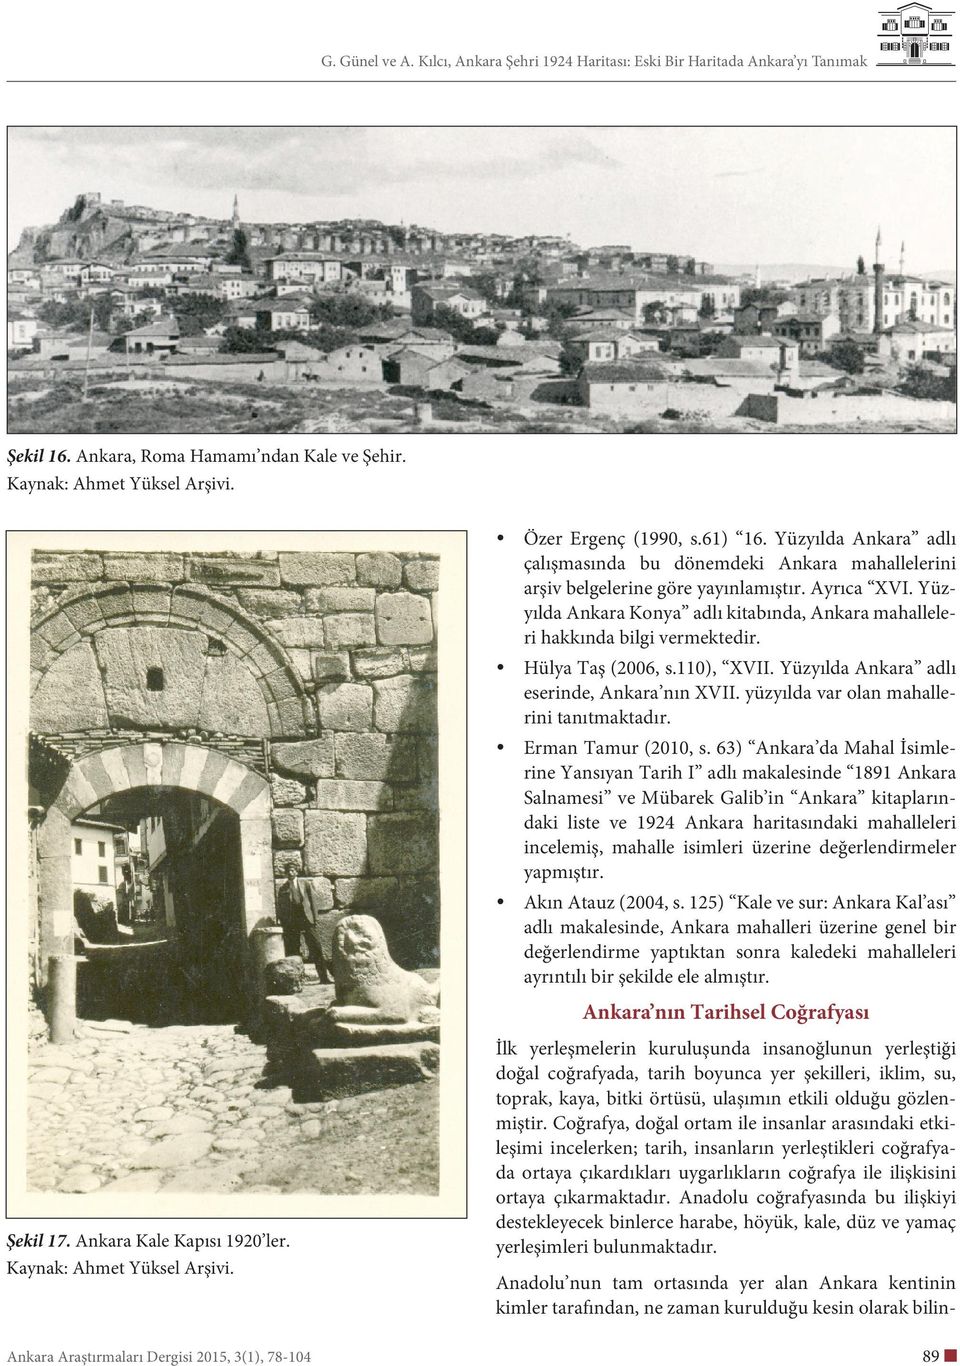 Yüzyılda Ankara Konya adlı kitabında, Ankara mahalleleri hakkında bilgi vermektedir. Hülya Taş (2006, s.110), XVII. Yüzyılda Ankara adlı eserinde, Ankara nın XVII.